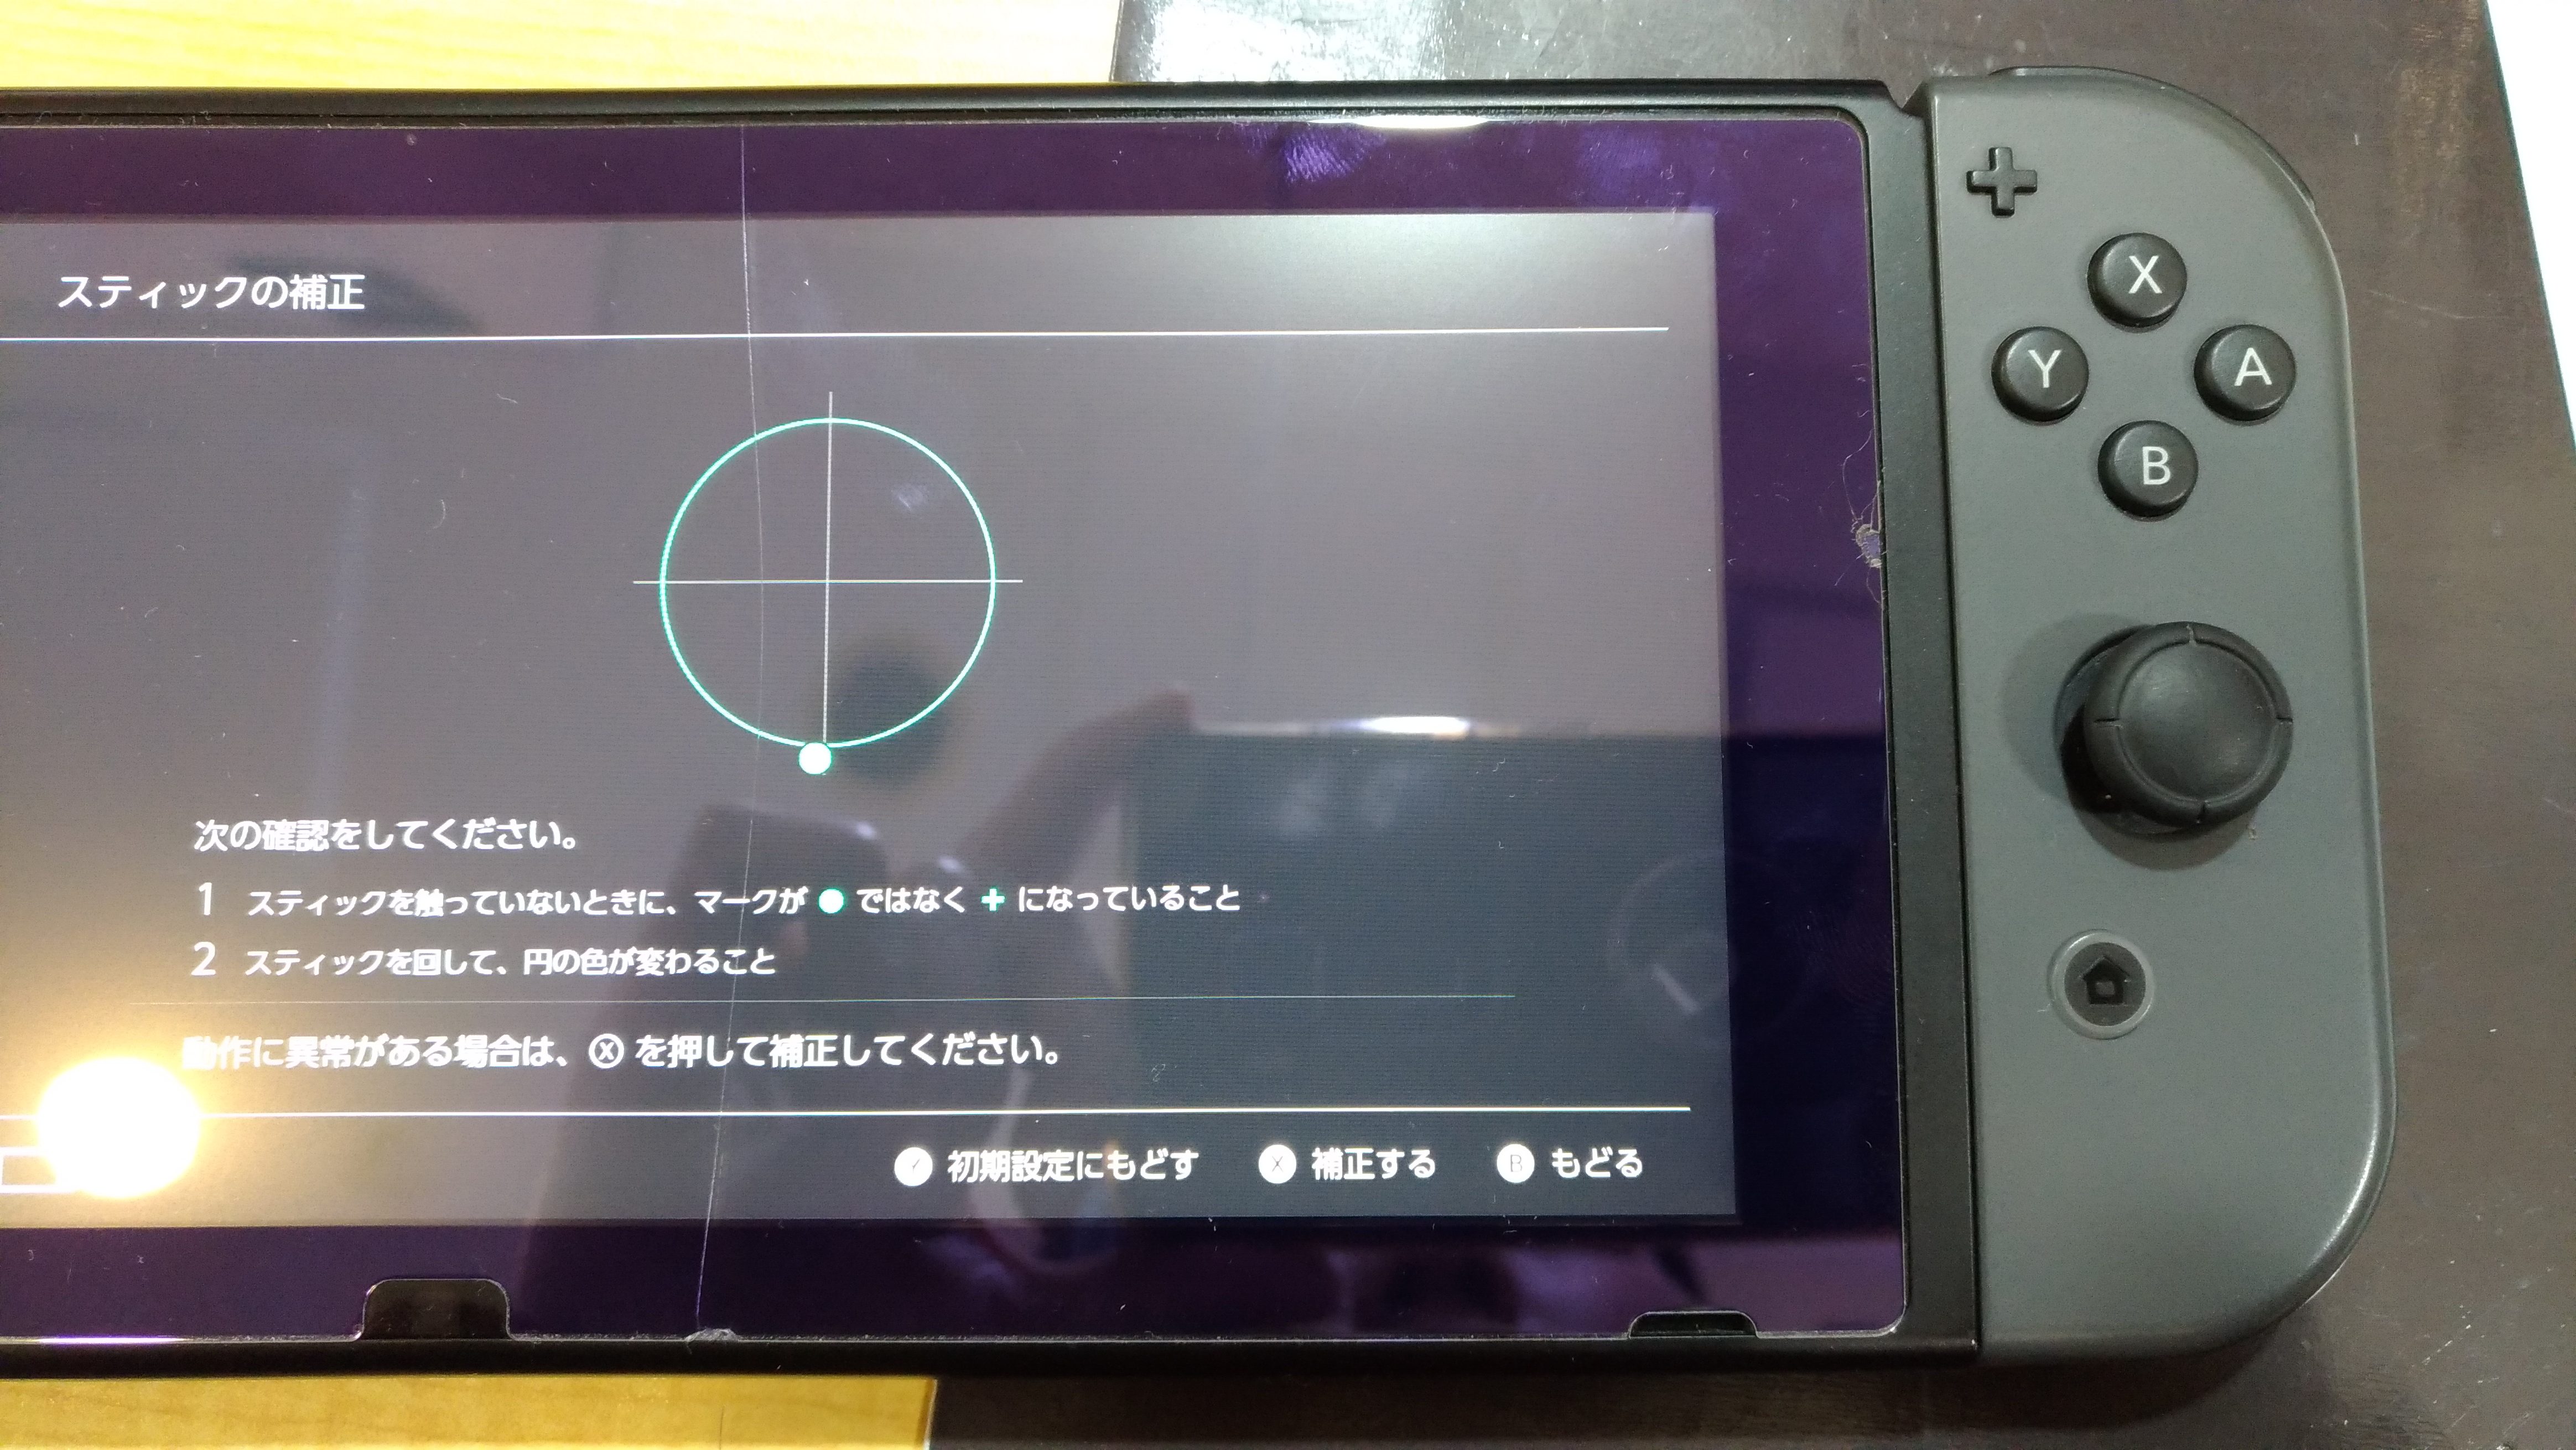 ジョイコンのスティックが勝手に動く アナログスティック交換 Nintendo3ds Switch Psp 修理のゲームホスピタル Nintendo3ds ニンテンドーds Psp 修理